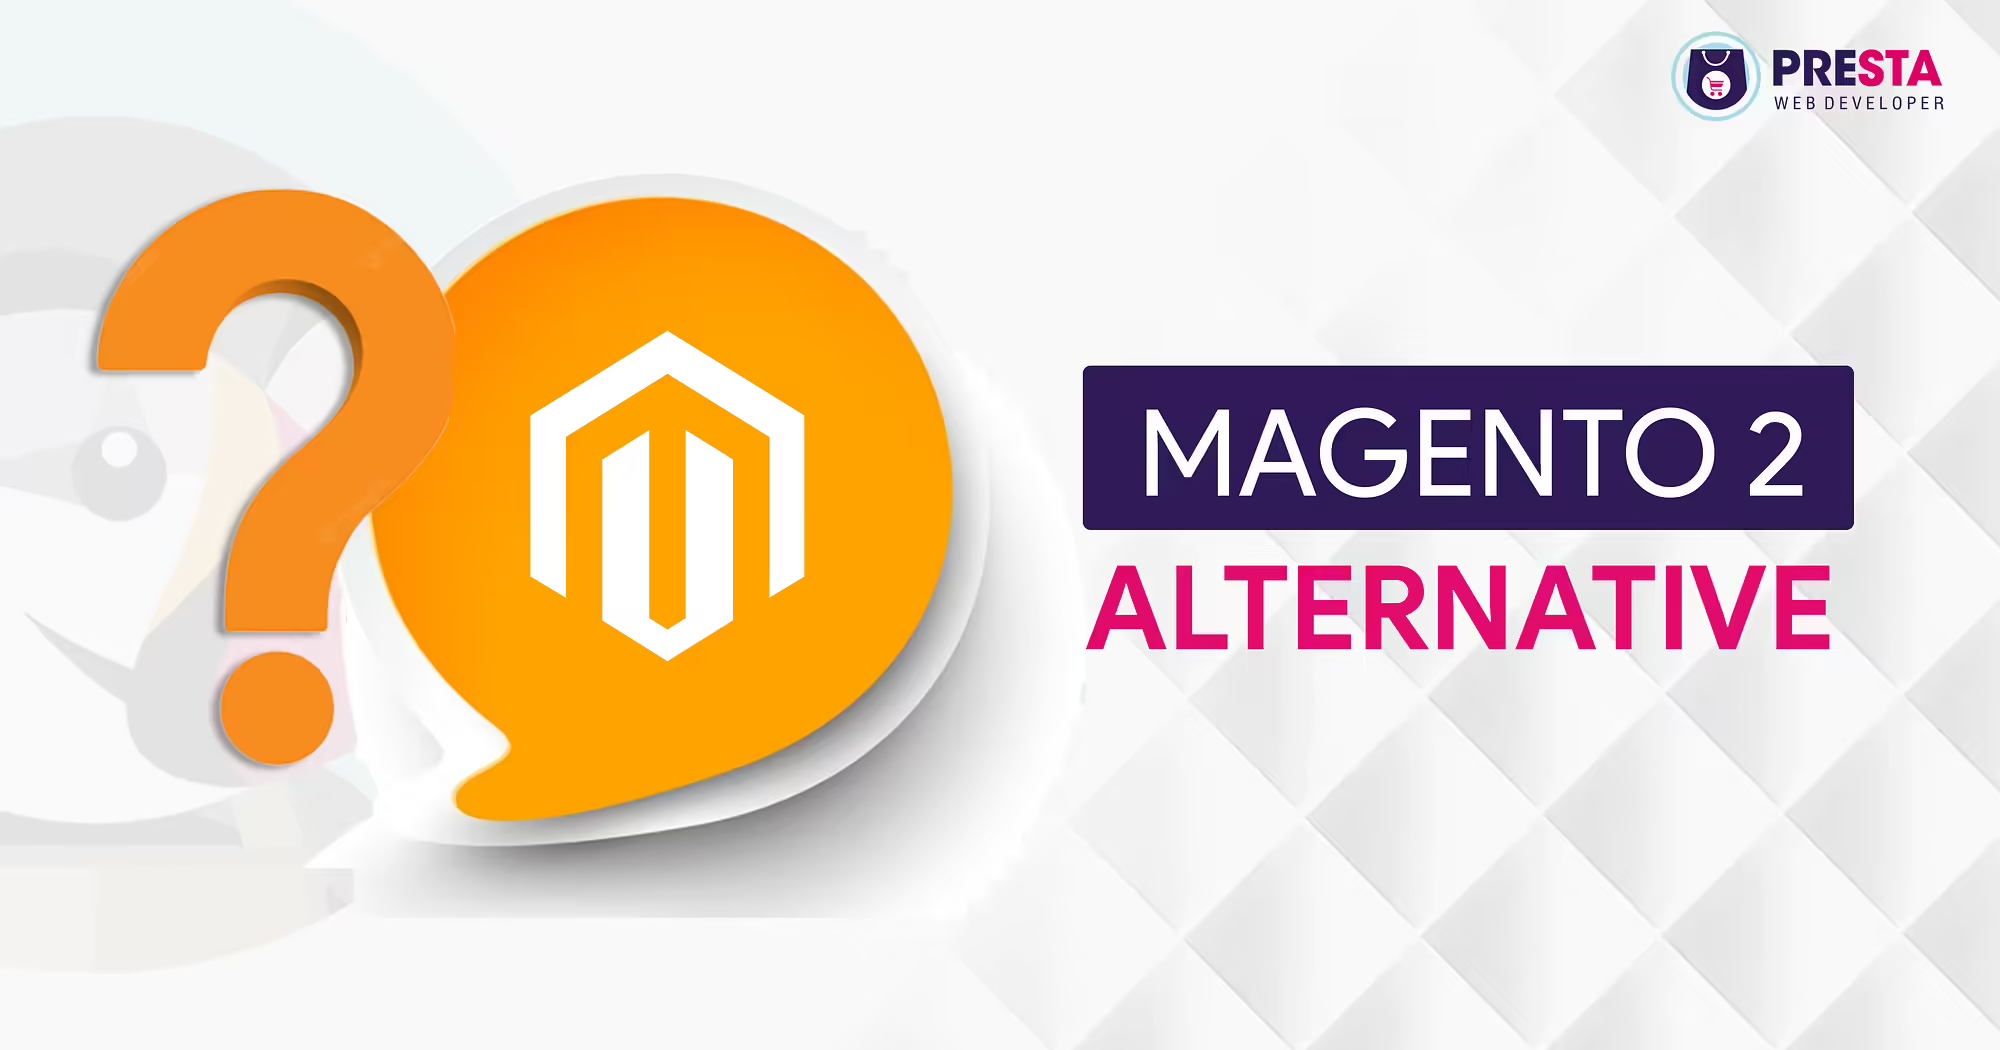 Magento 2 Alternative | Which option is best instead?